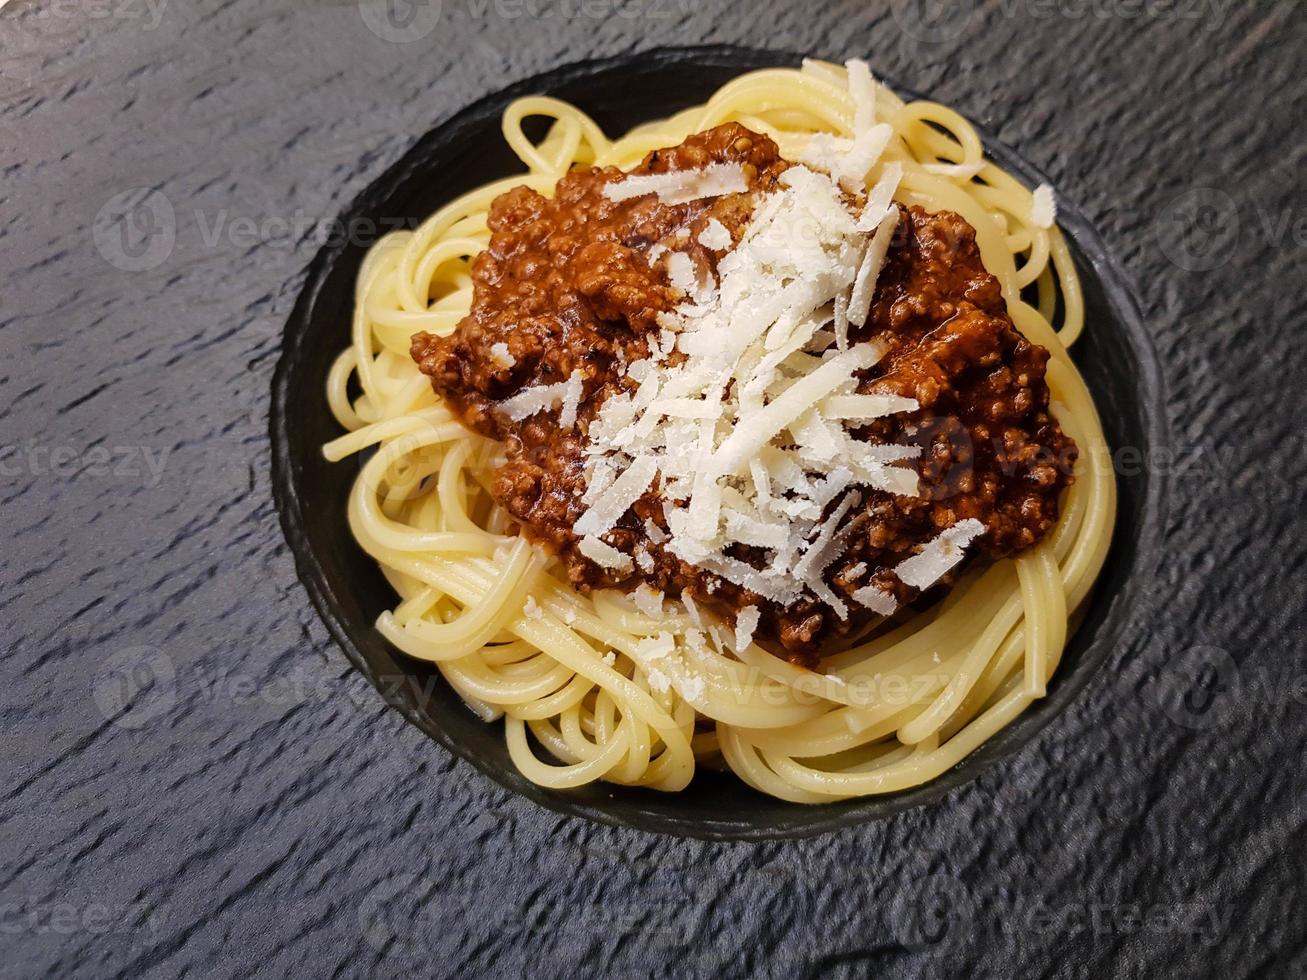 espaguete à bolonhesa com molho de tomate foto